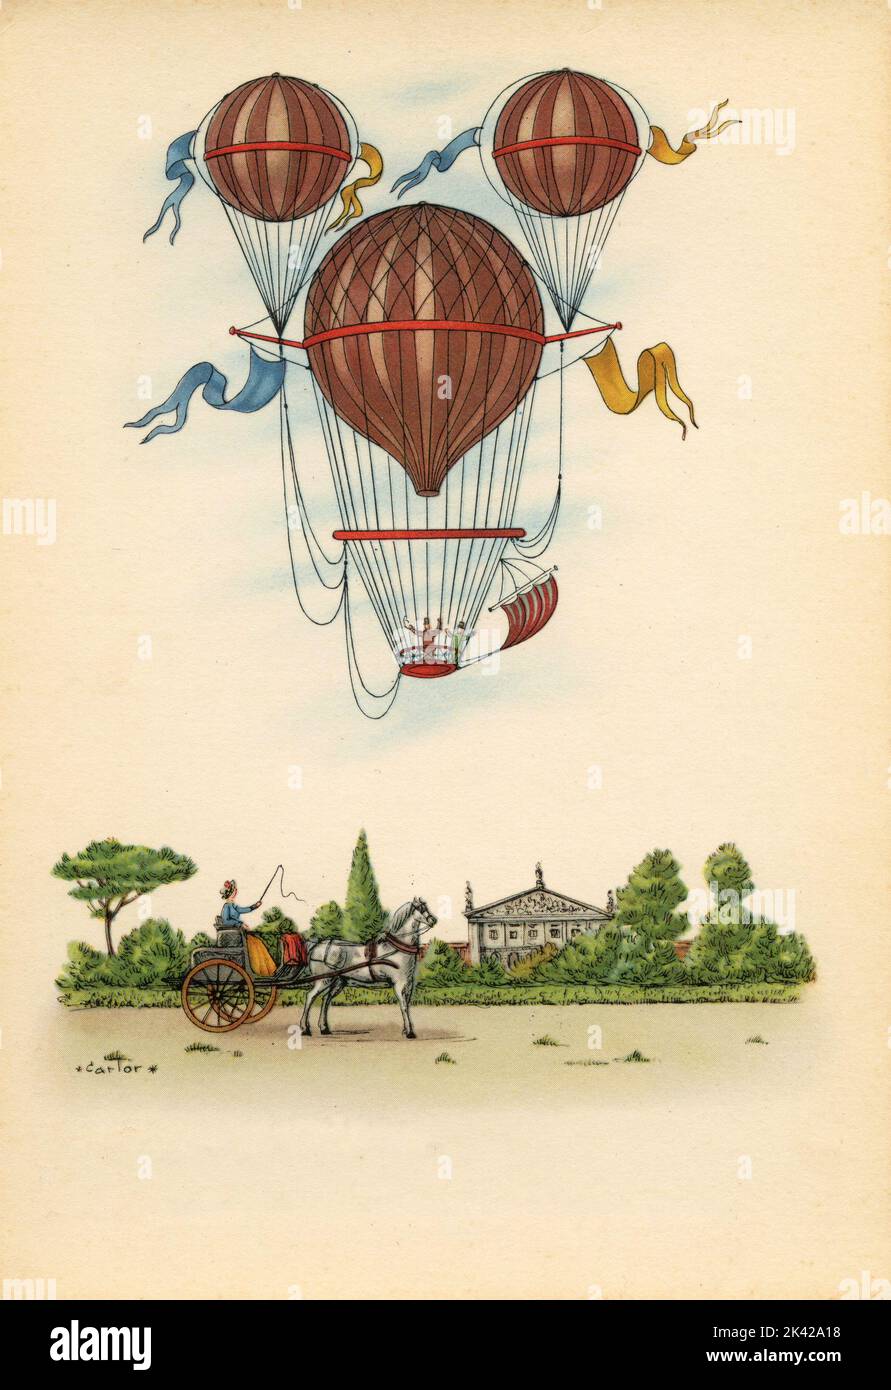 Ilustración de la ascensión con el ballon de aire caliente de Margat, Francia 1850 Foto de stock